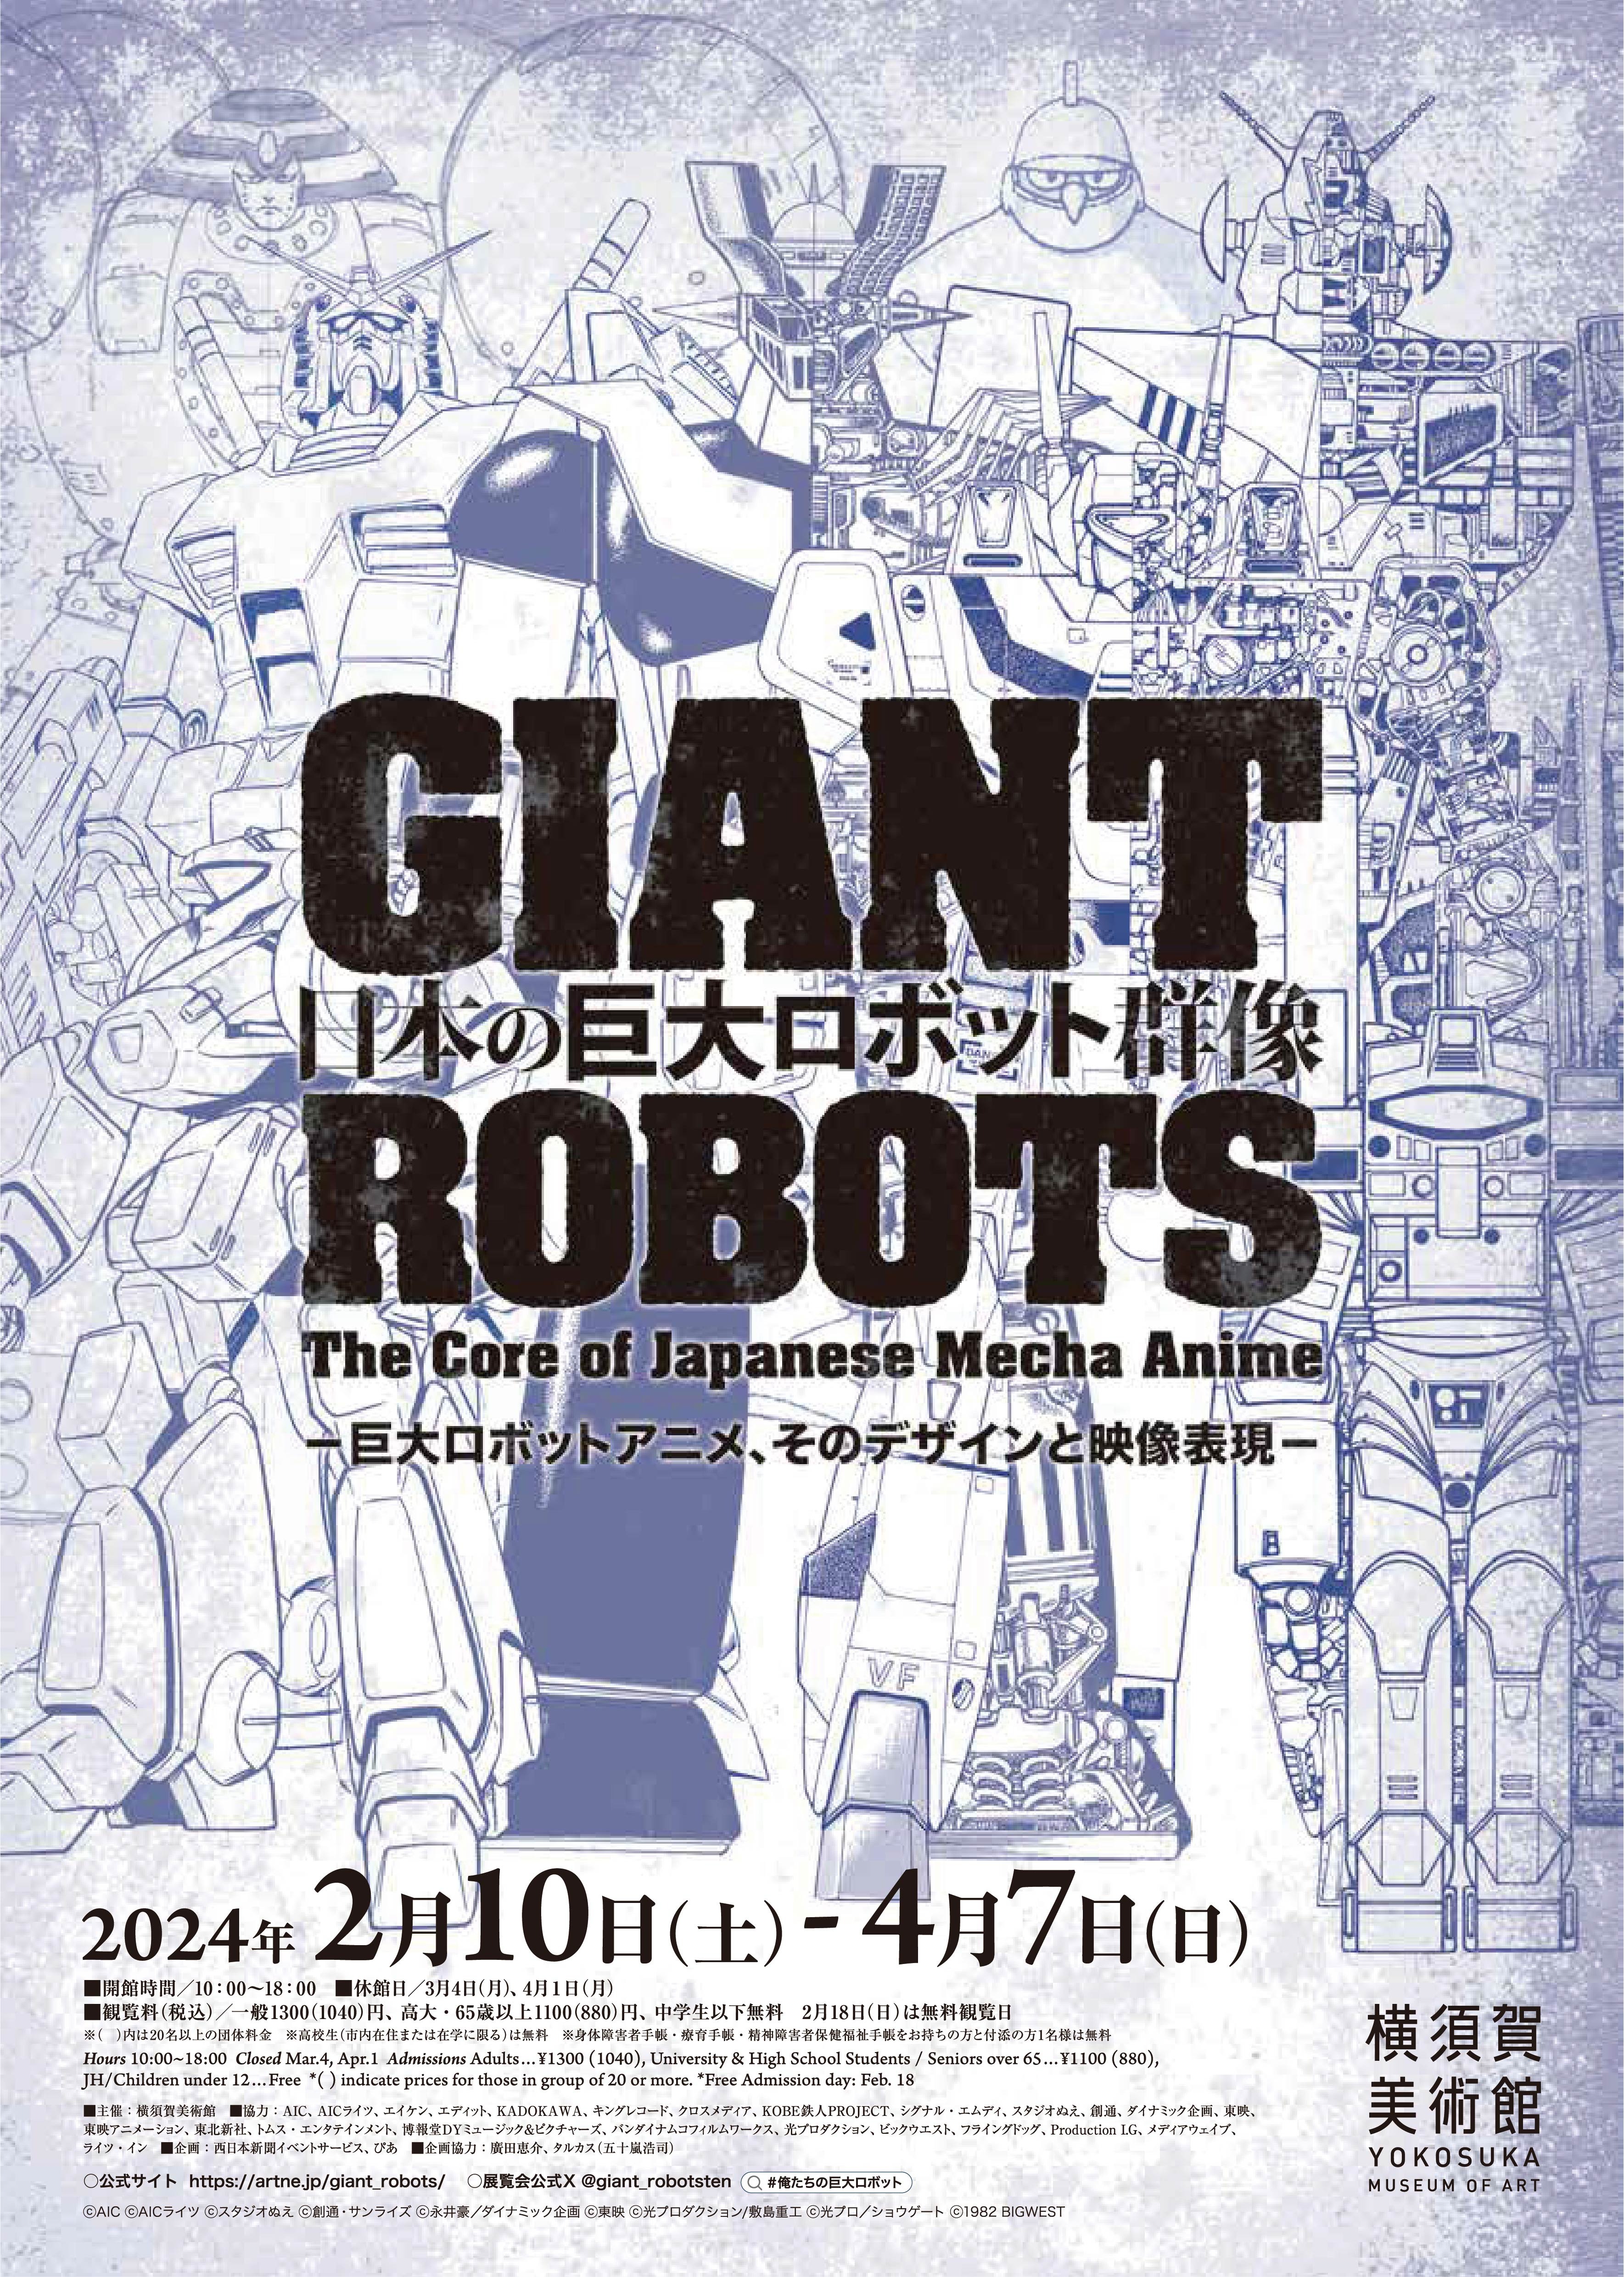 Giant Robots